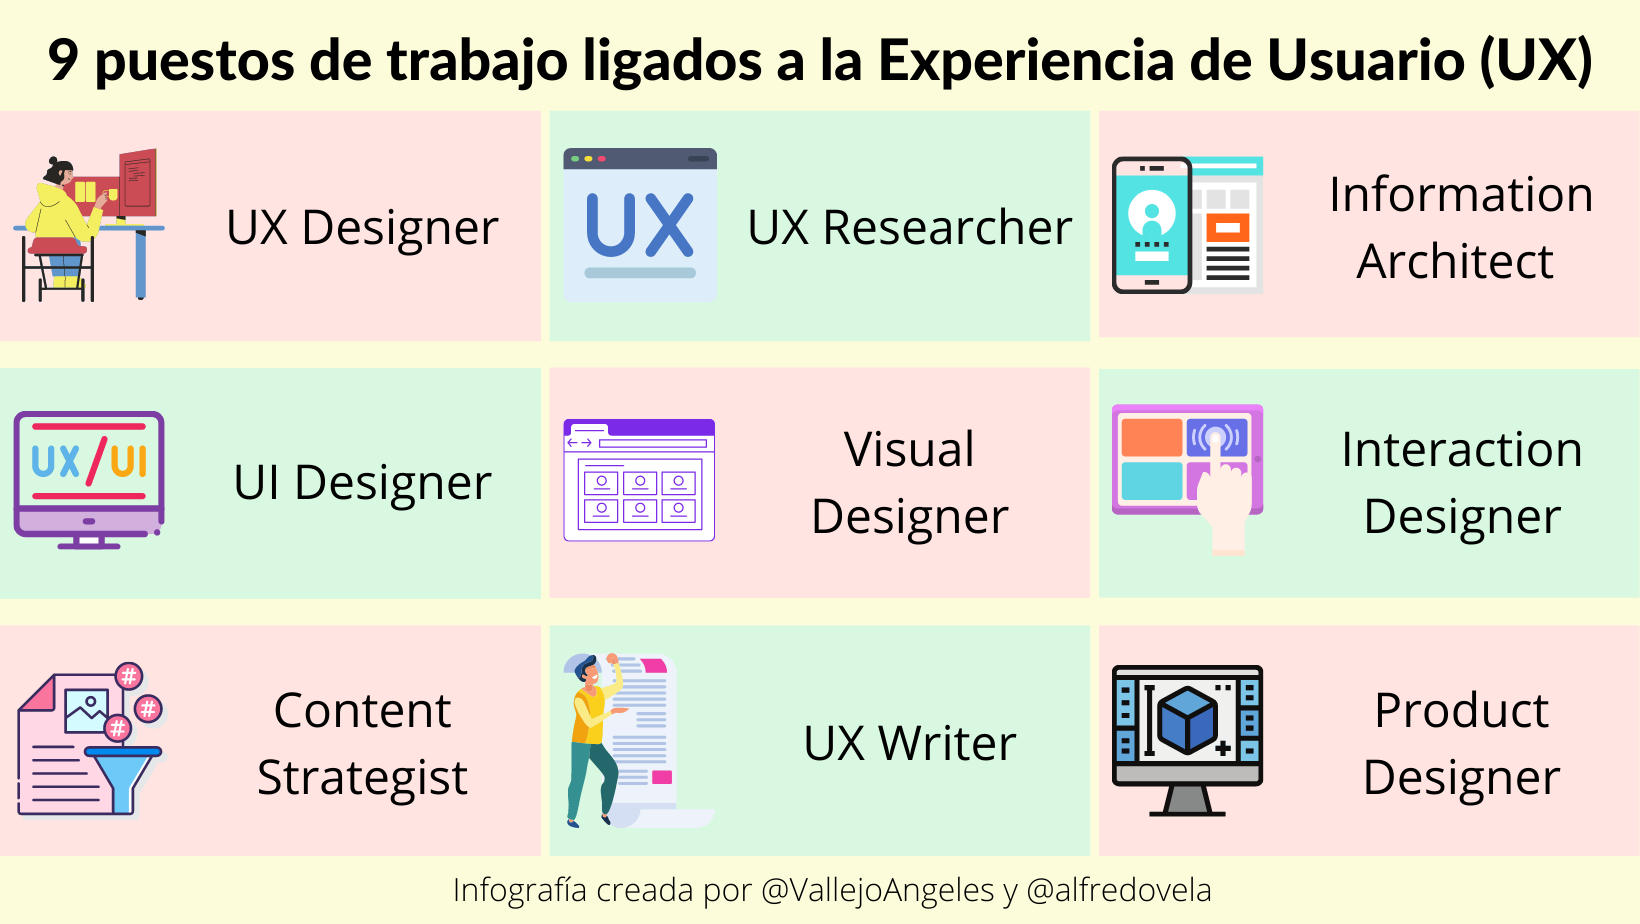 9 puestos de trabajo ligados a la Experiencia de Usuario #infografia #diseño #marketing #UX